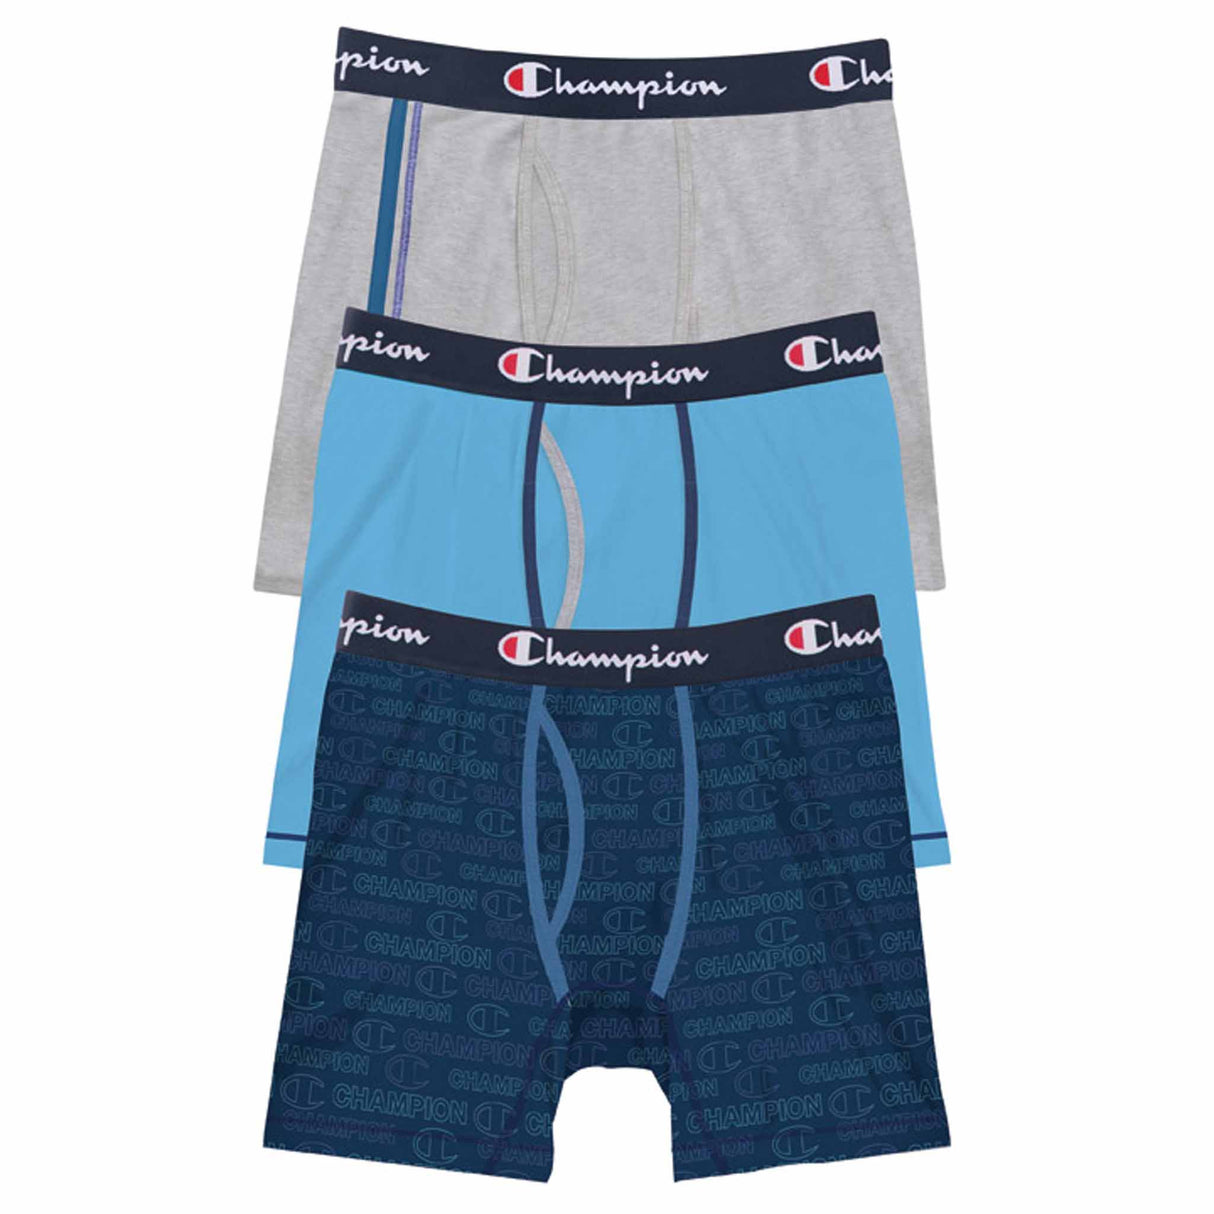 Boxer sous-vêtements Champion Athletics Everyday Comfort 3-pack pour homme - Bleu / Gris